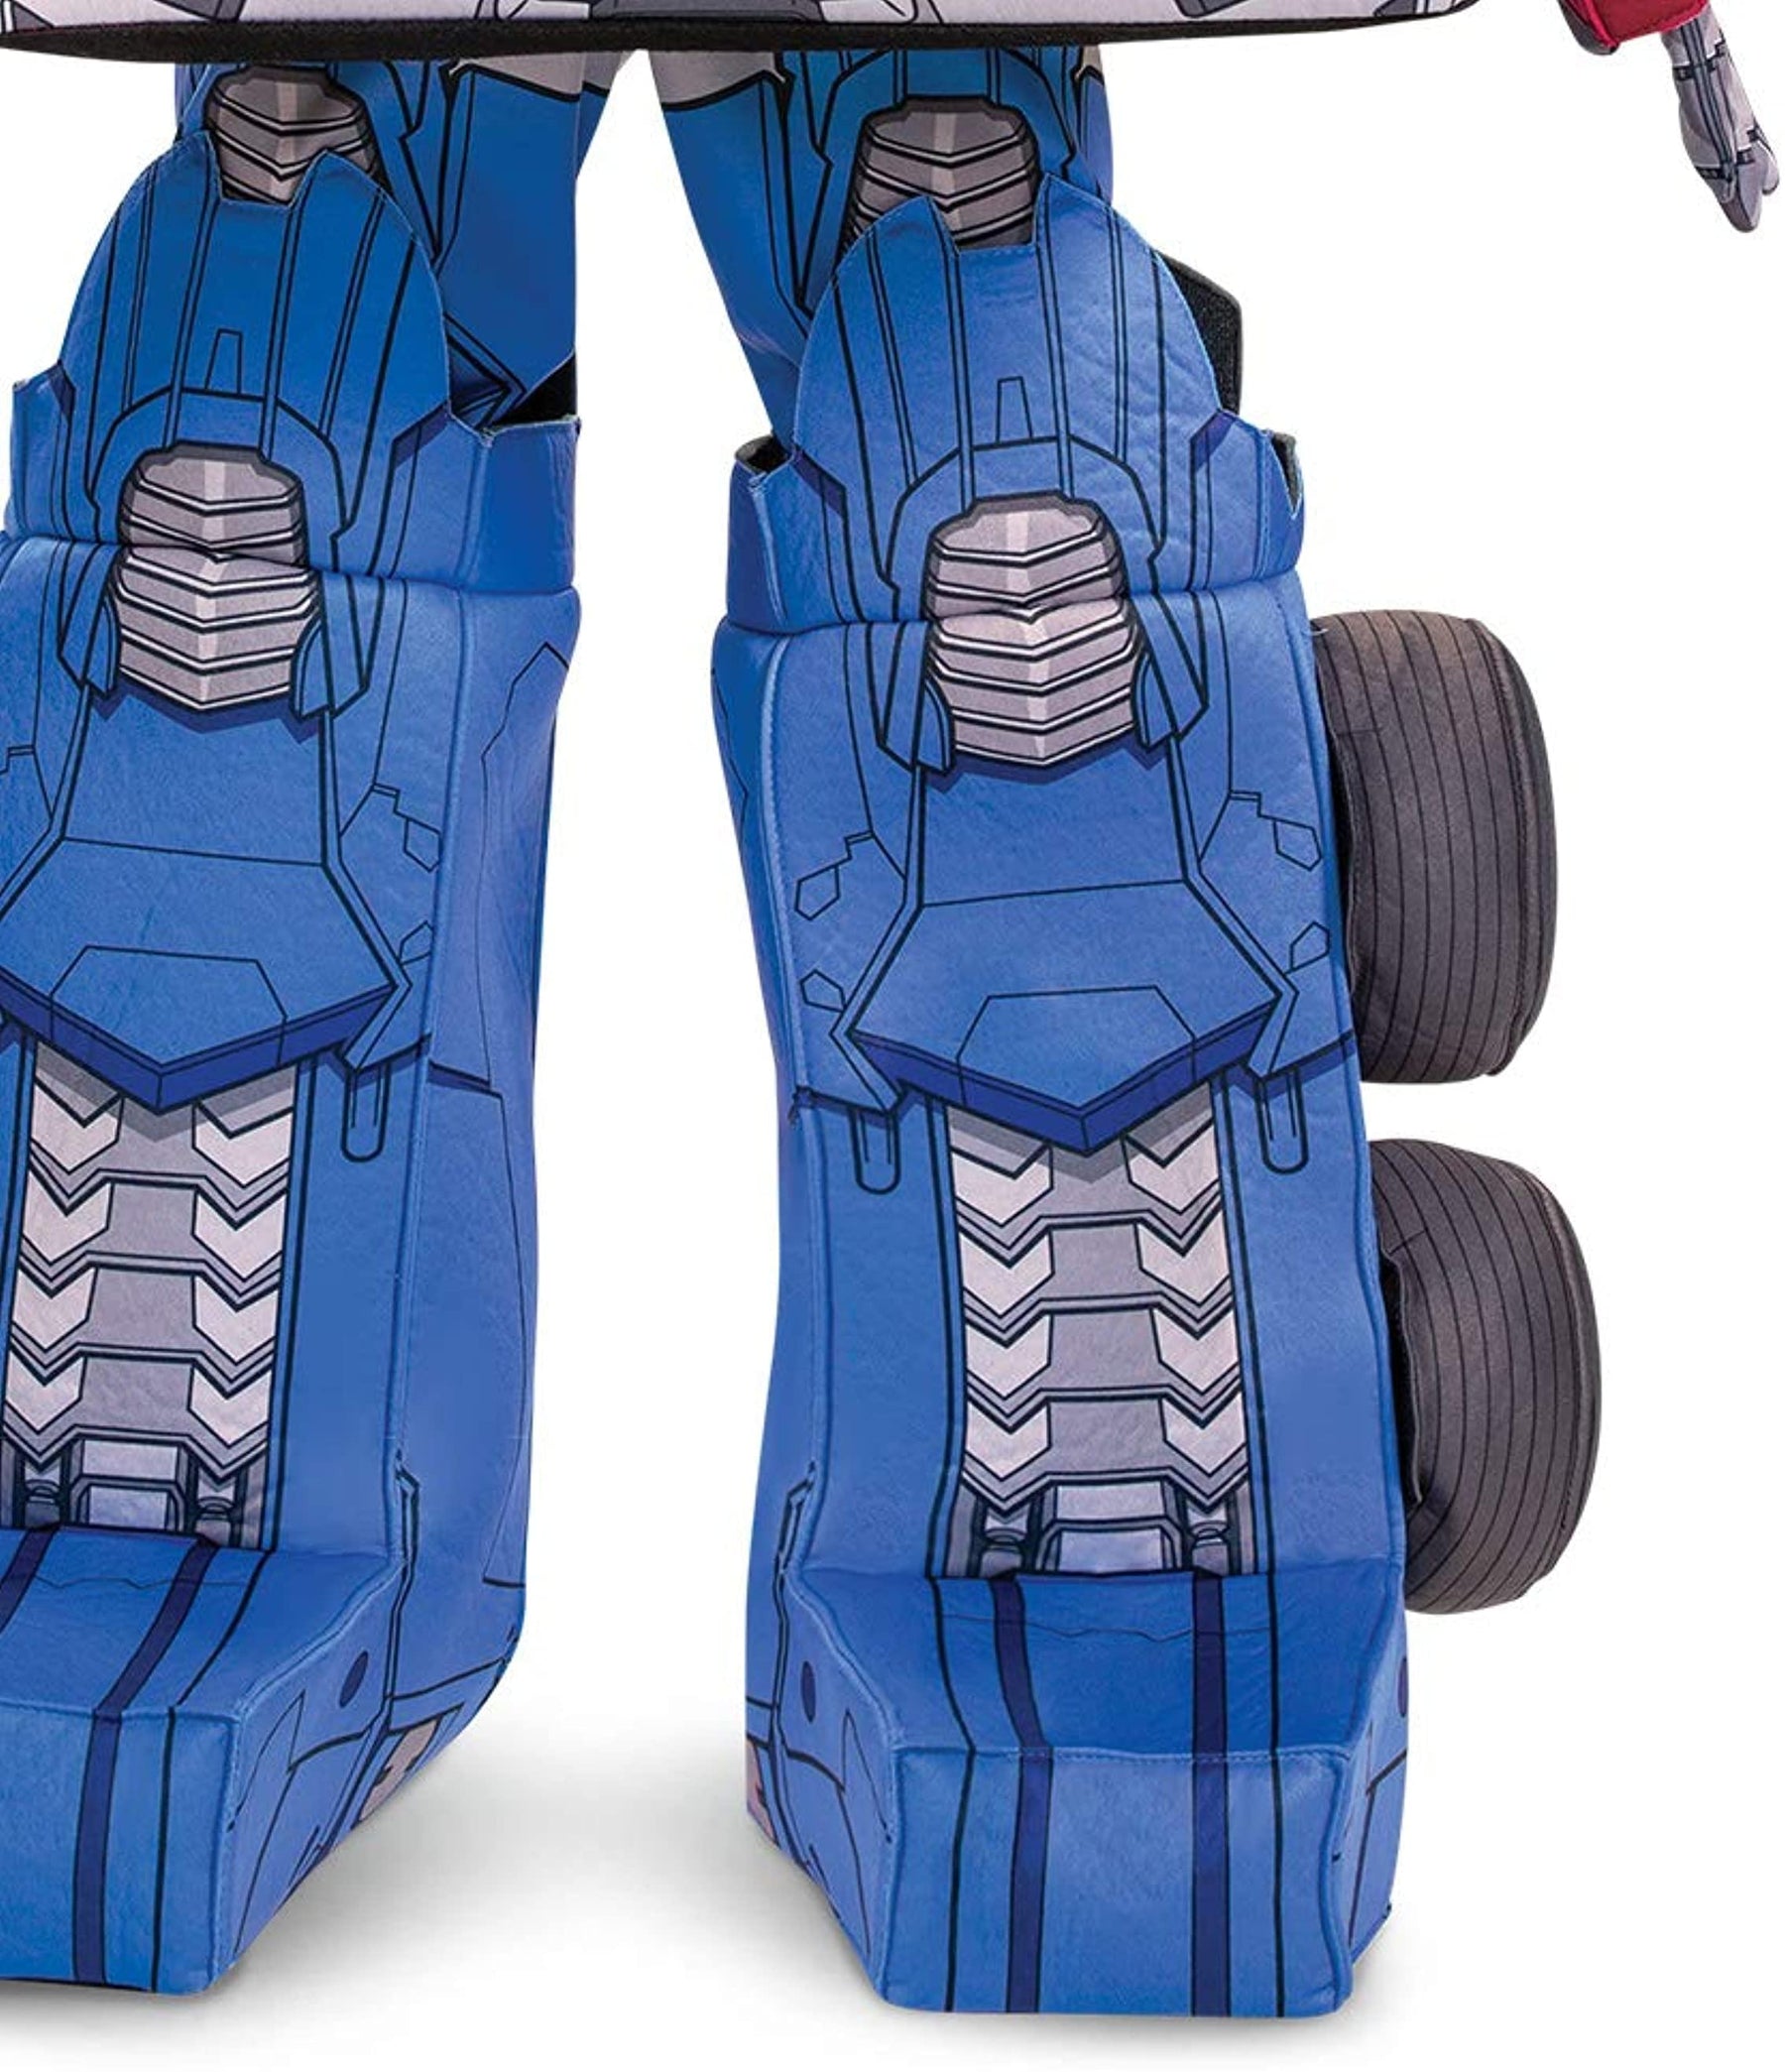 Transformers Optimus Prime Child Converting Costume